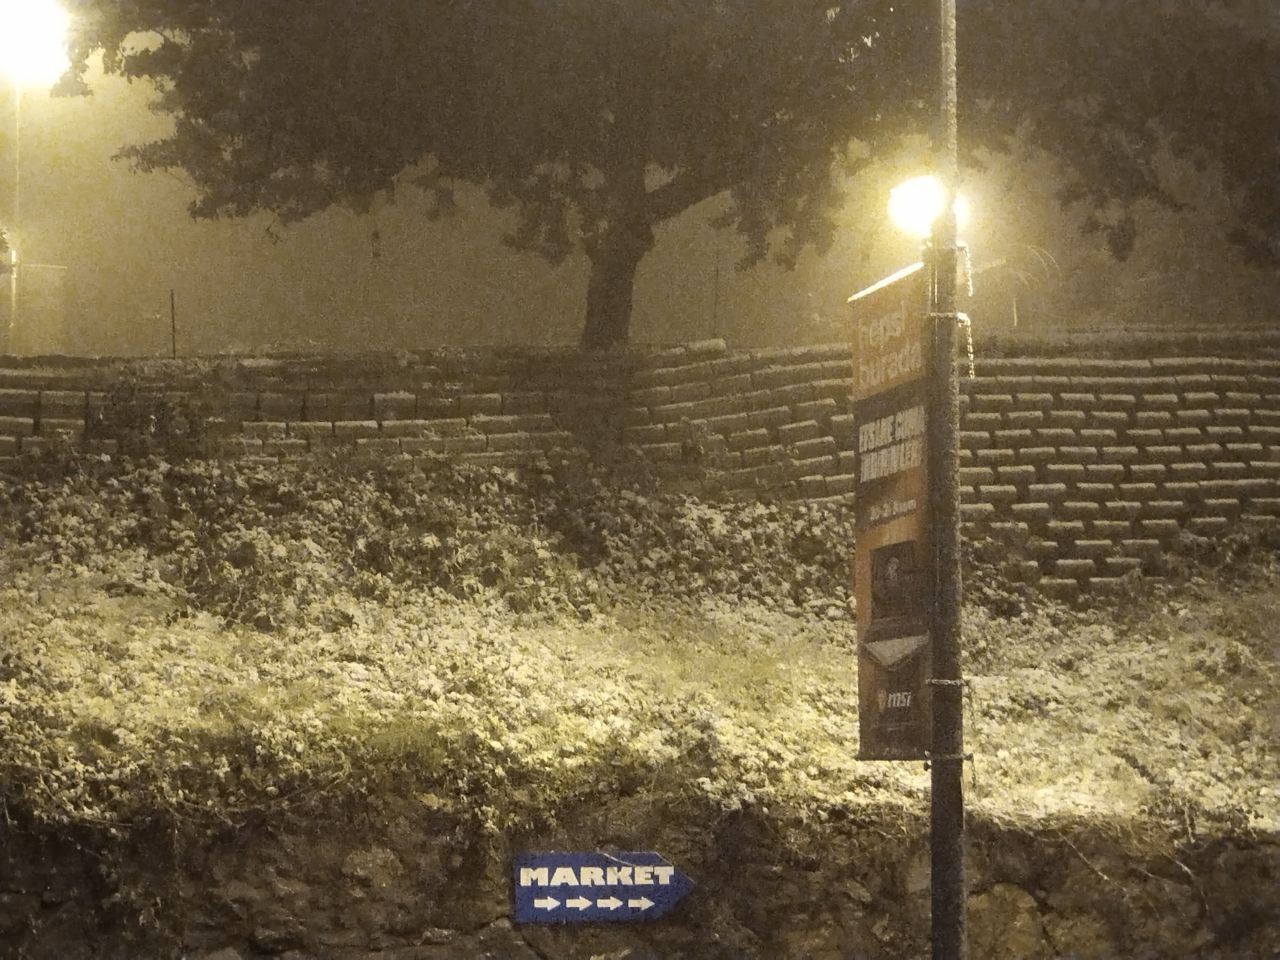 İstanbul'da kar yağışı başladı! Her yer beyaza bürünmeye başladı! İşte Taksim Meydanı ve Çamlıca Tepesi...